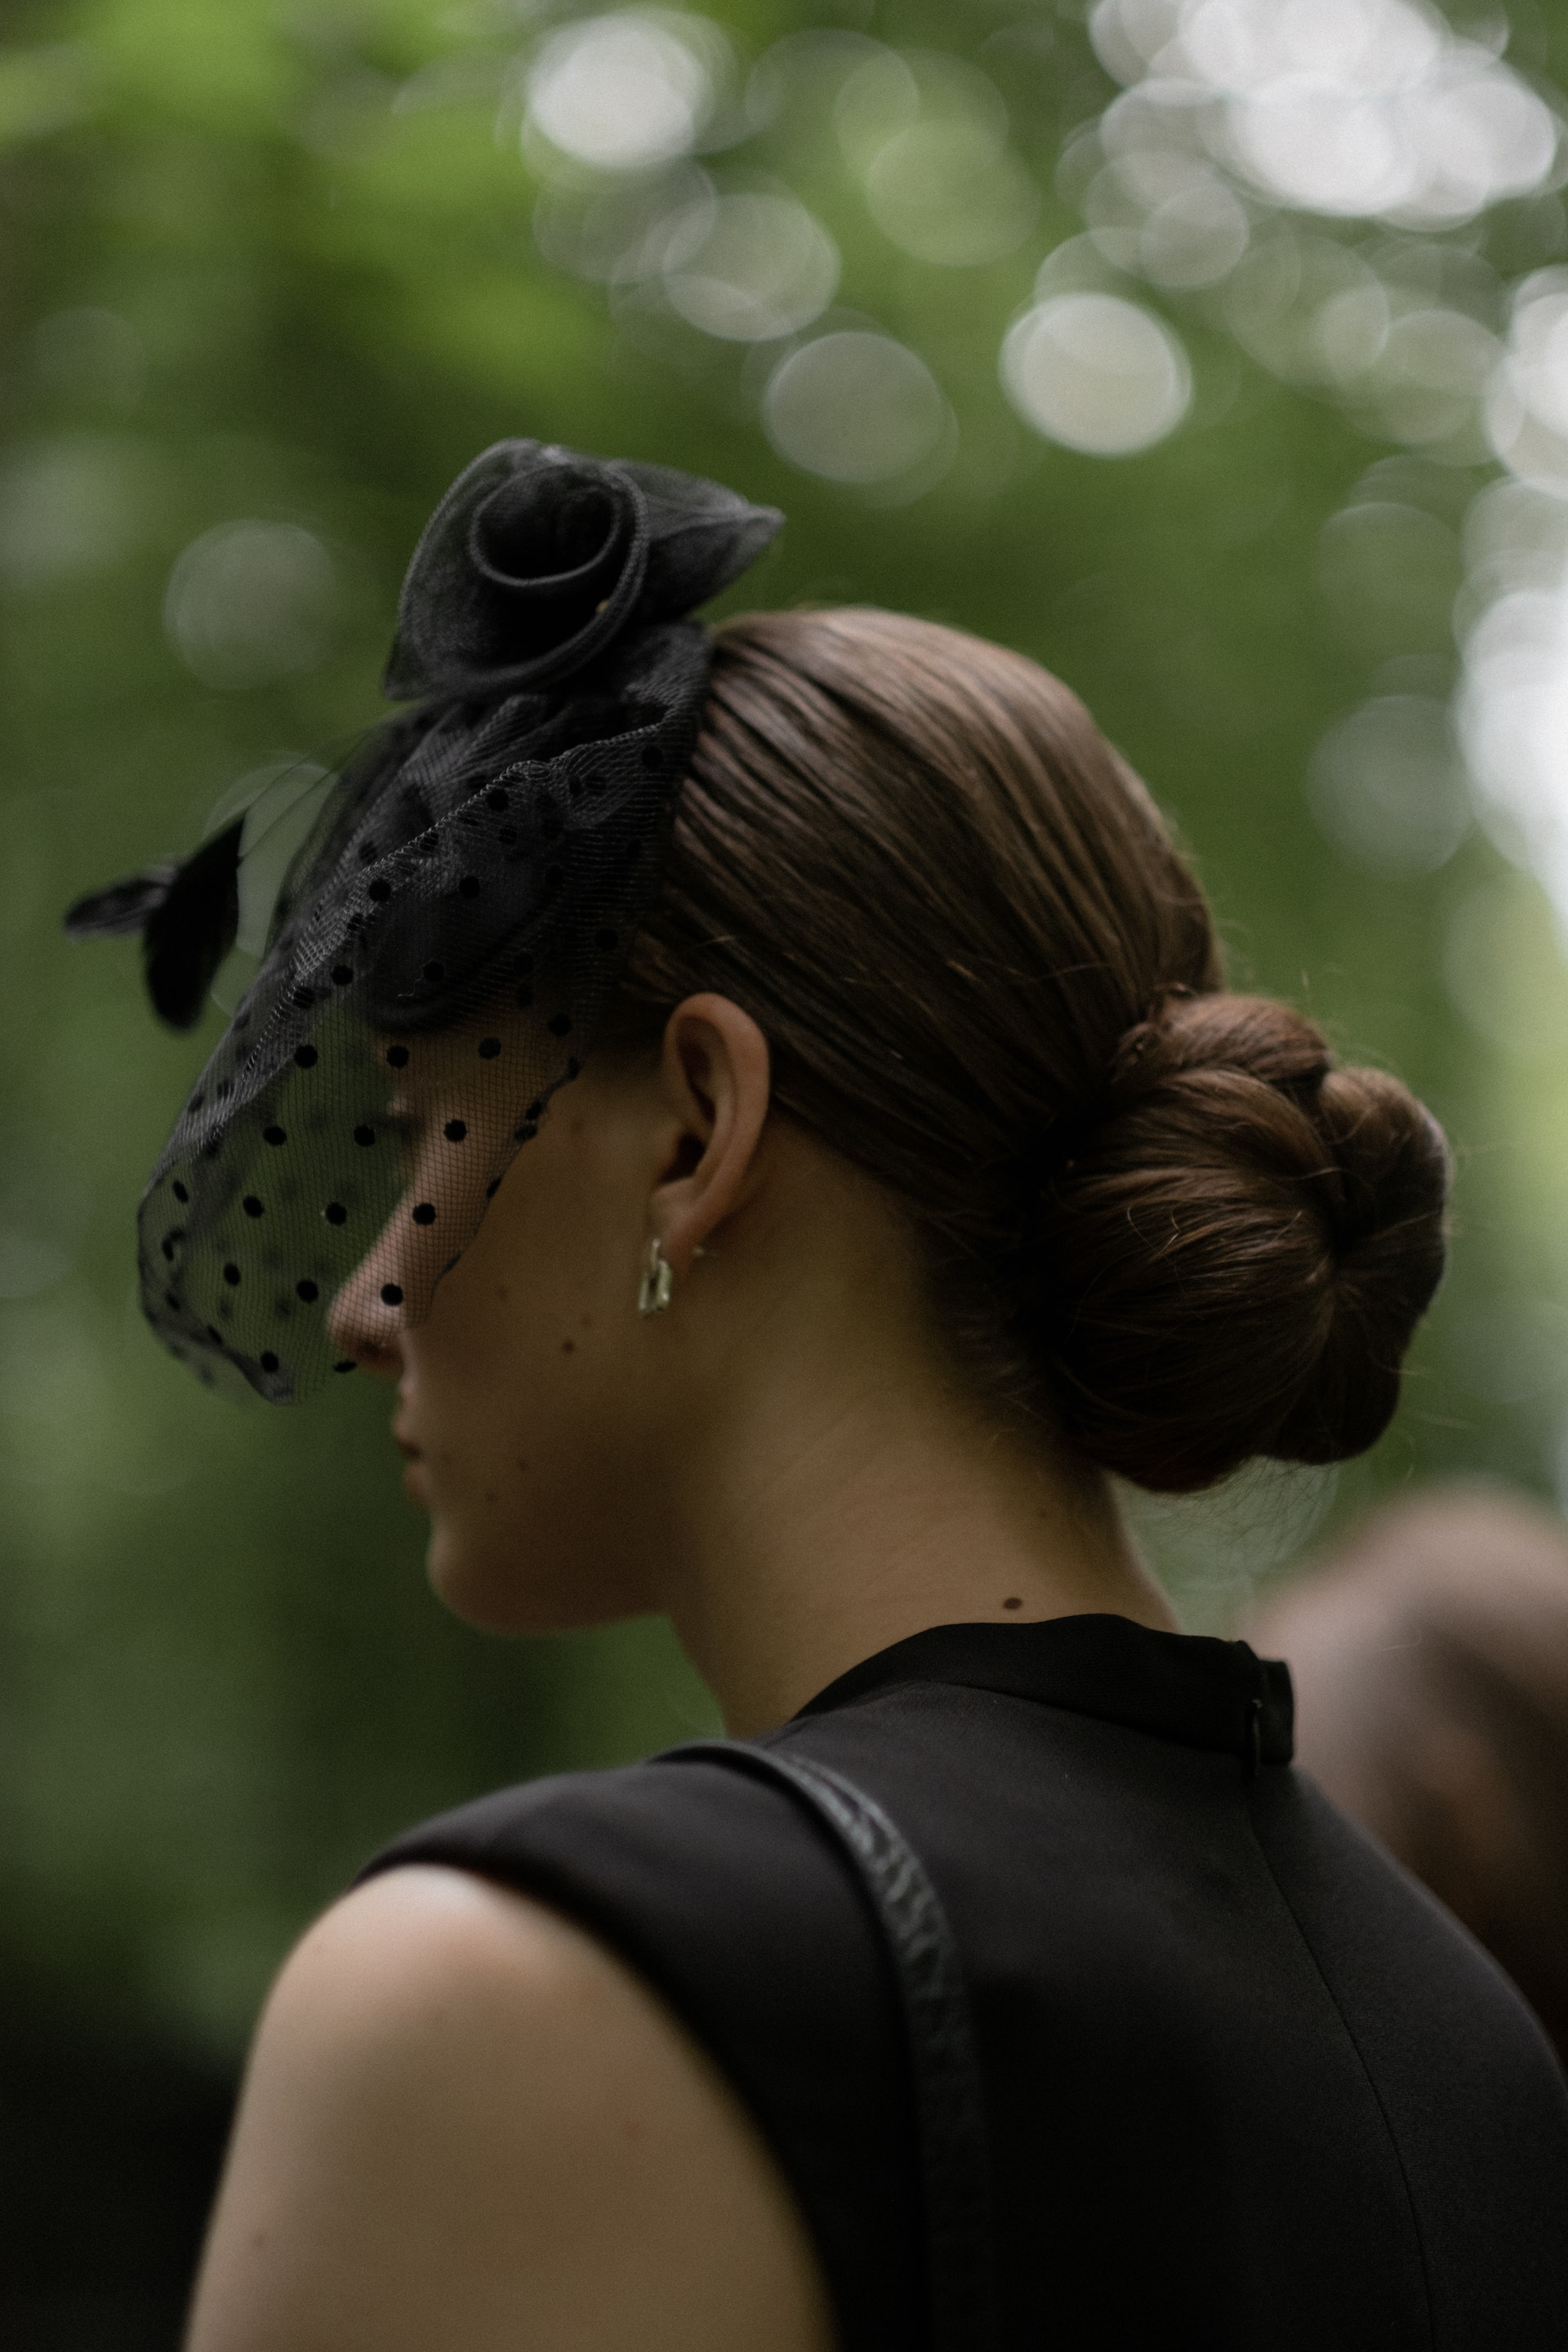 Une femme vêtue de noir est photographiée en train d'assister à un enterrement | Source : Pexels